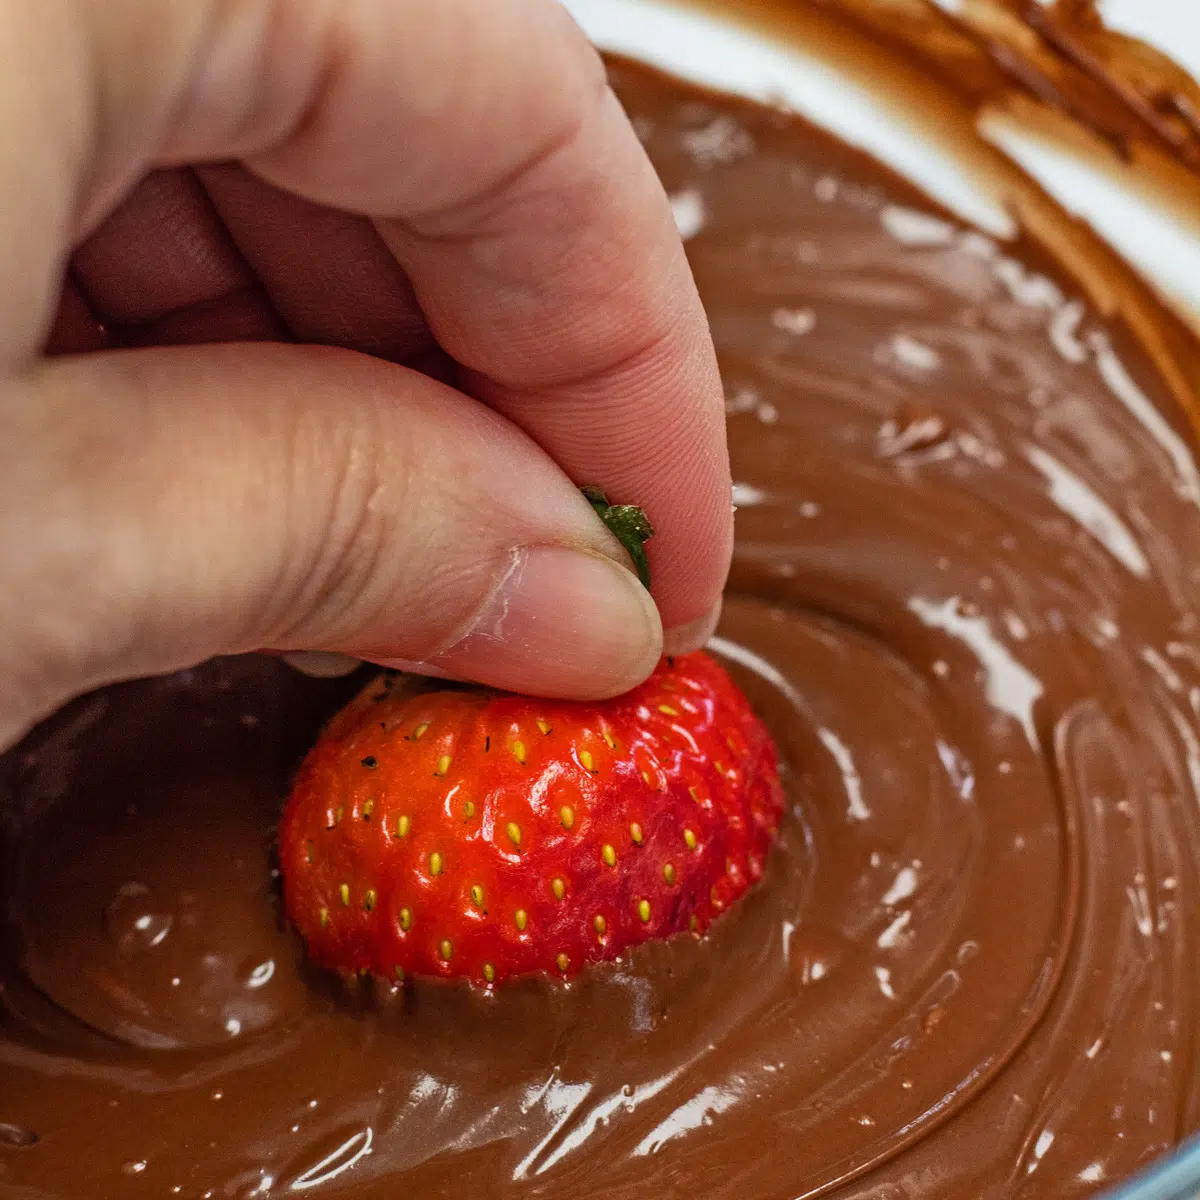 Como derreter pedaços de chocolate como este chocolate cremoso e suave usado com morangos.